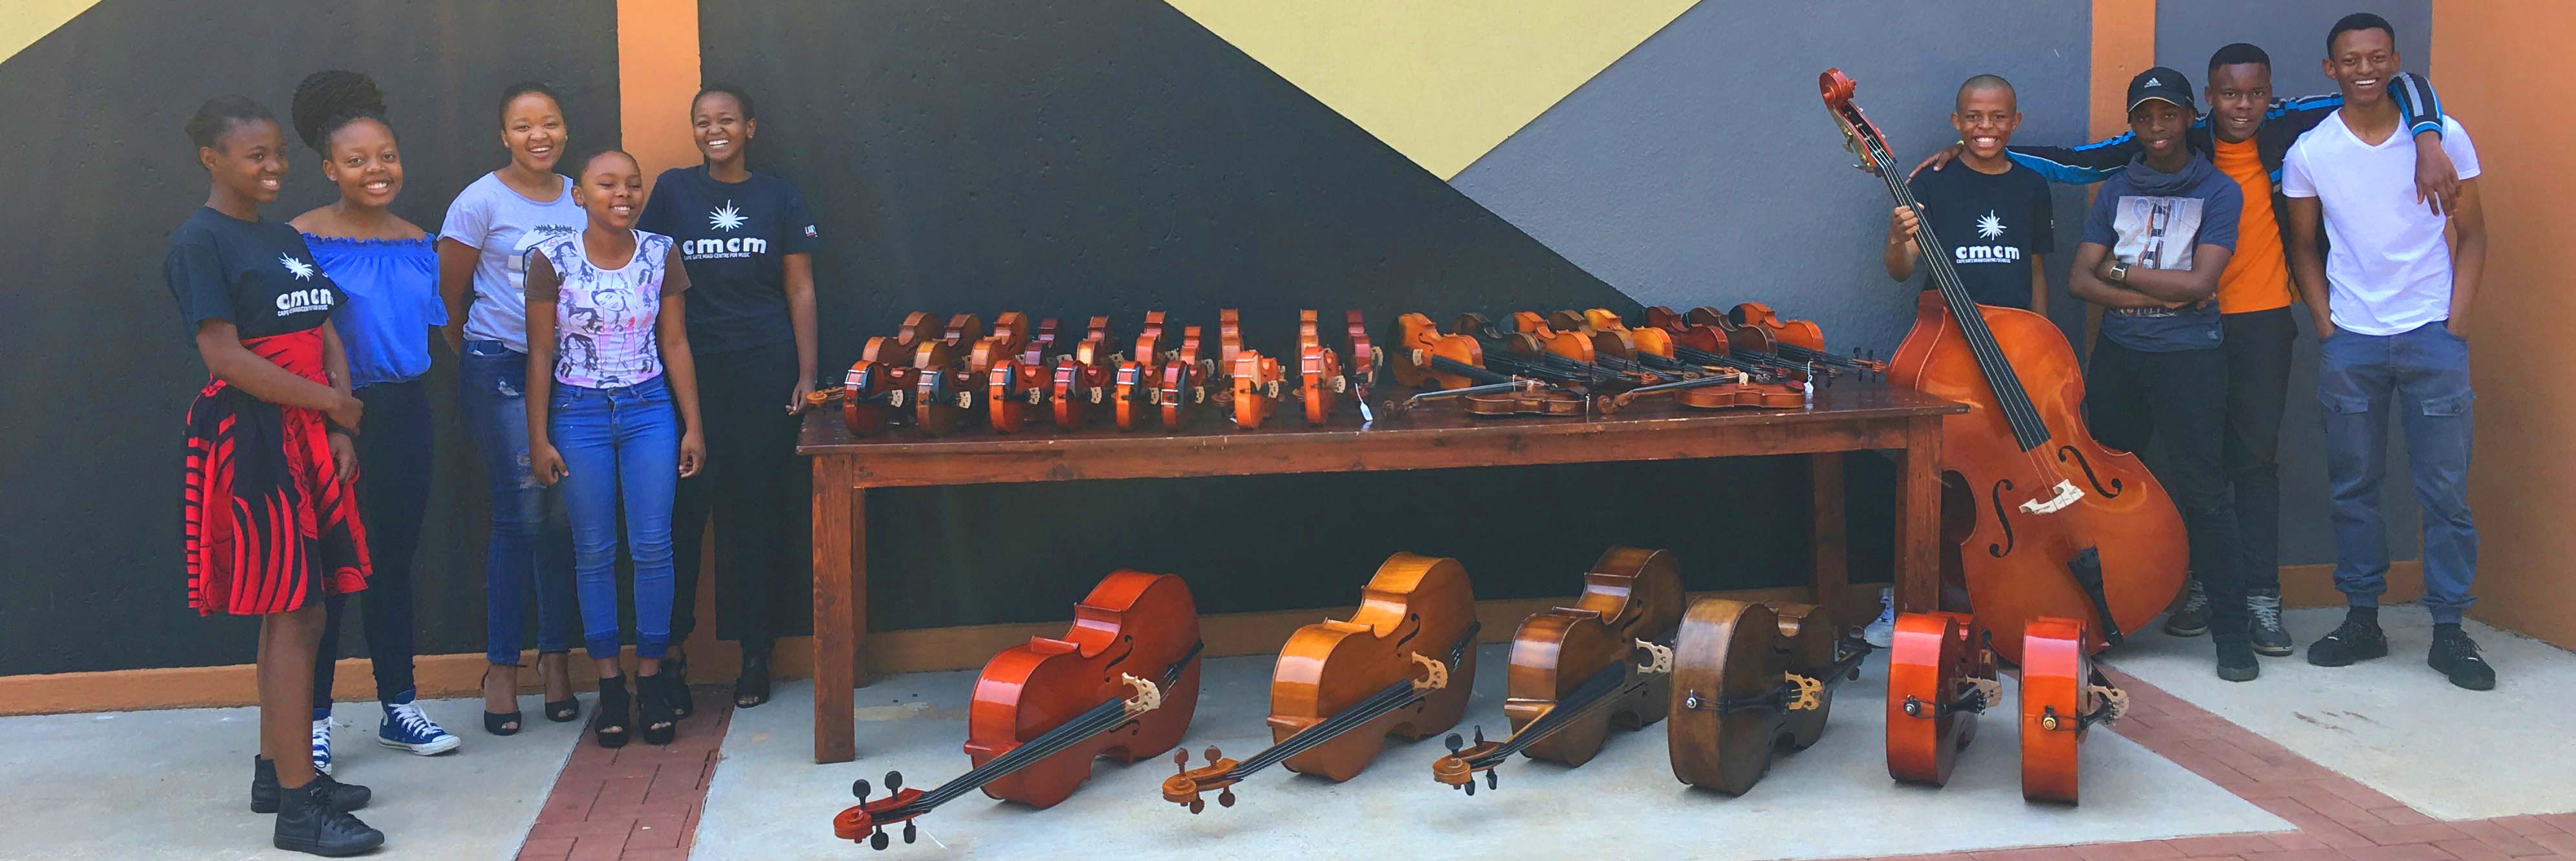 Arco instruments - Cape Gate MIAGI Centre for Music